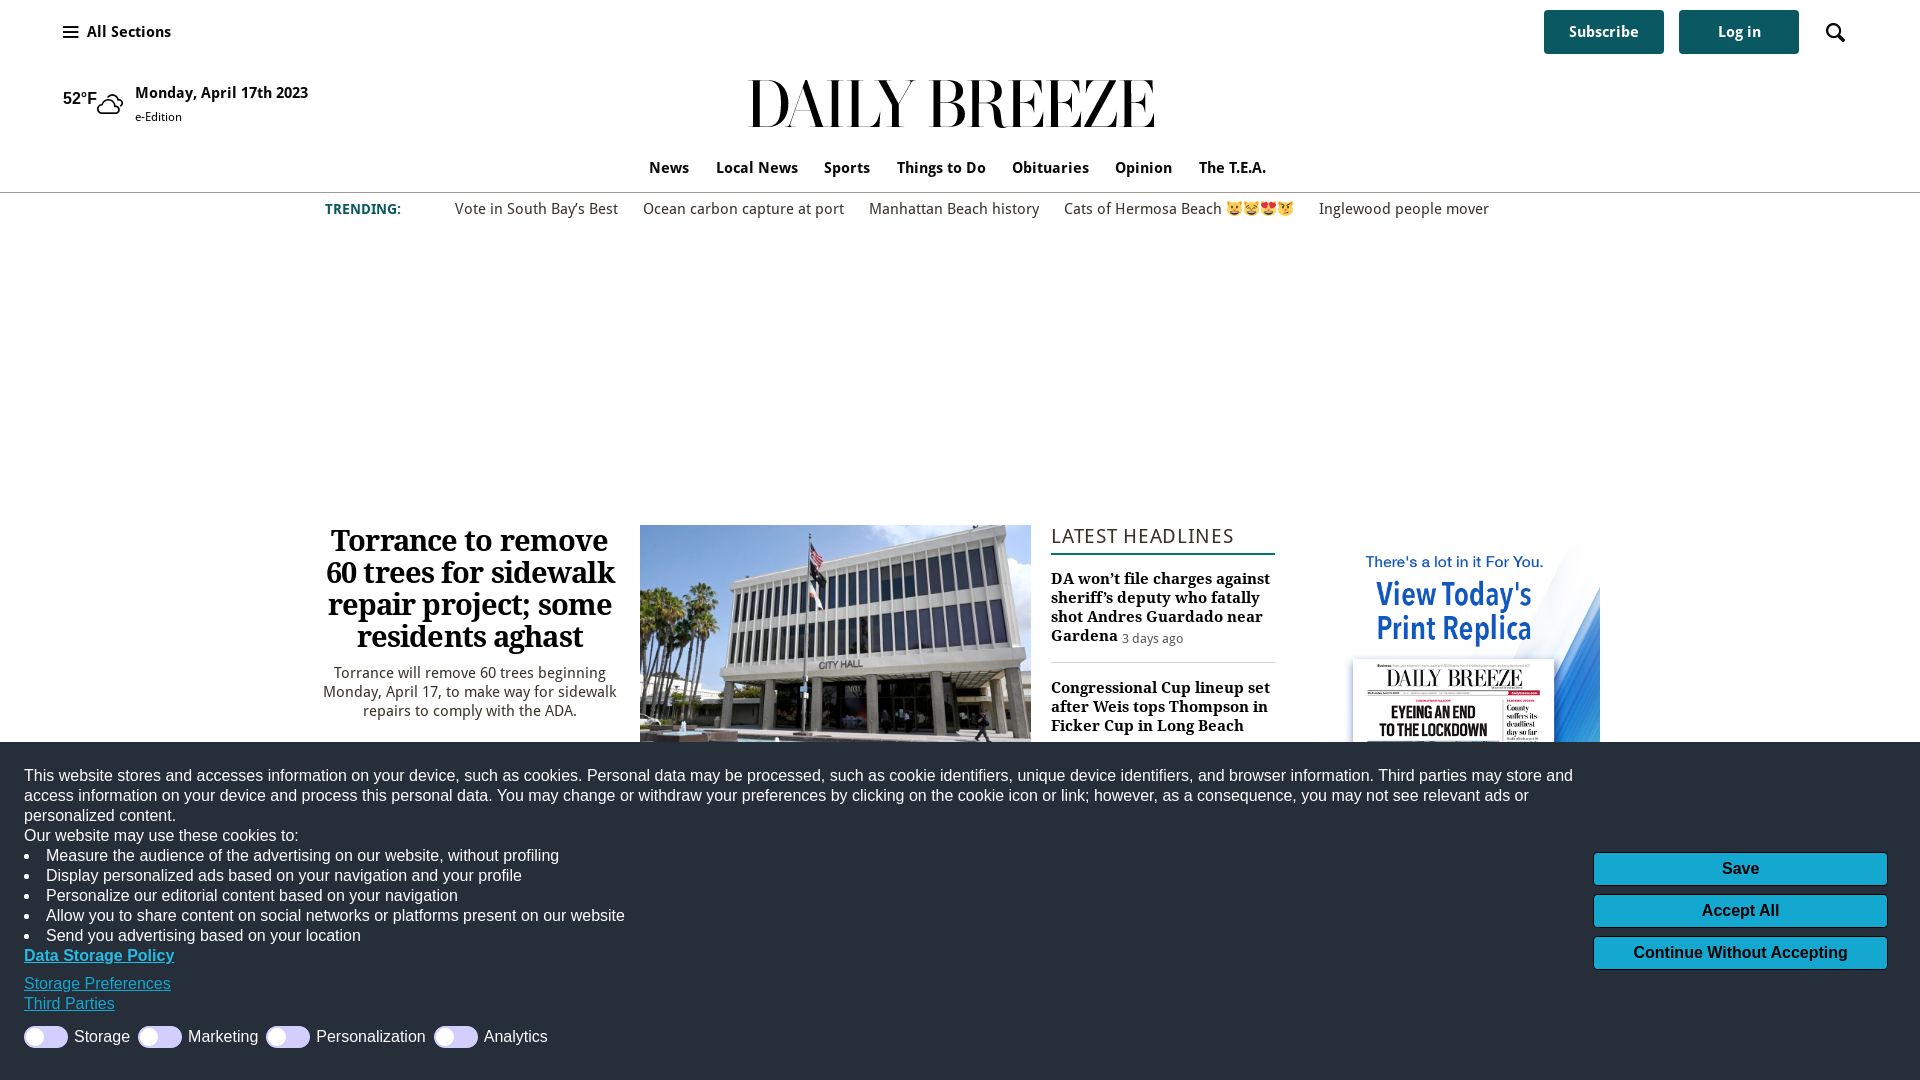 Website status dailybreeze.com is   ONLINE